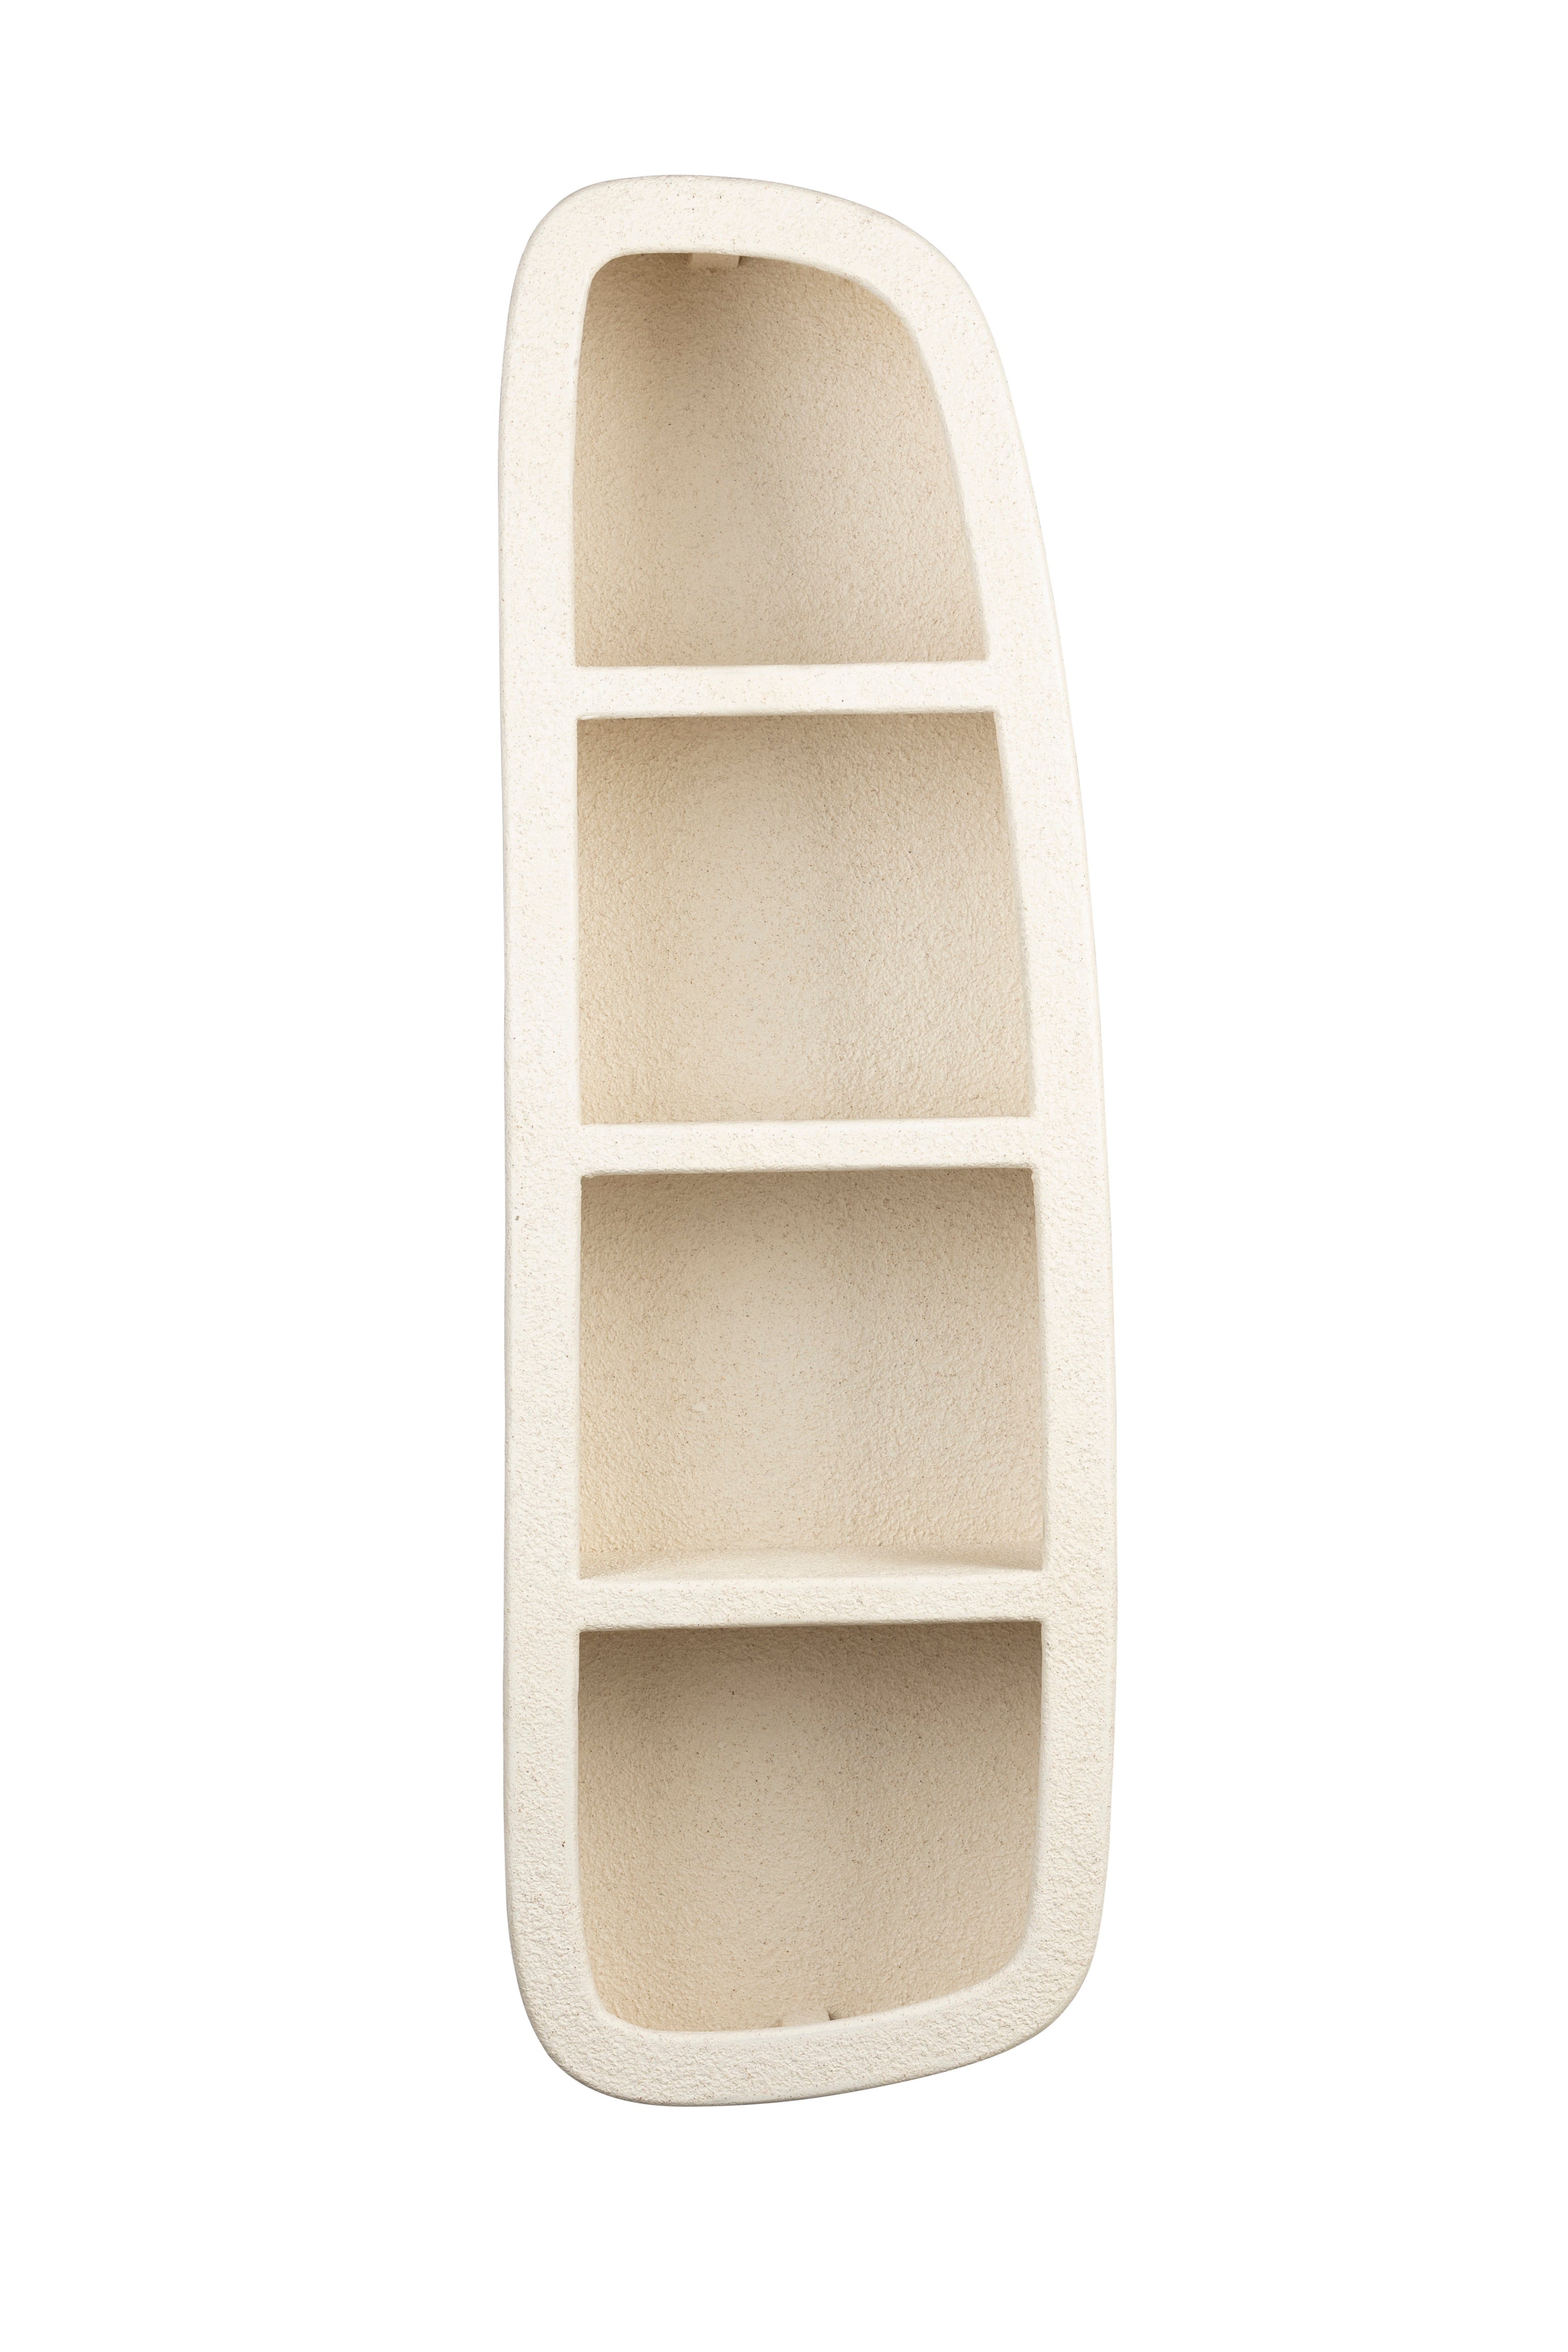 Wandregal Veda 3 Shelves in  präsentiert im Onlineshop von KAQTU Design AG. Wandregal ist von Dutchbone